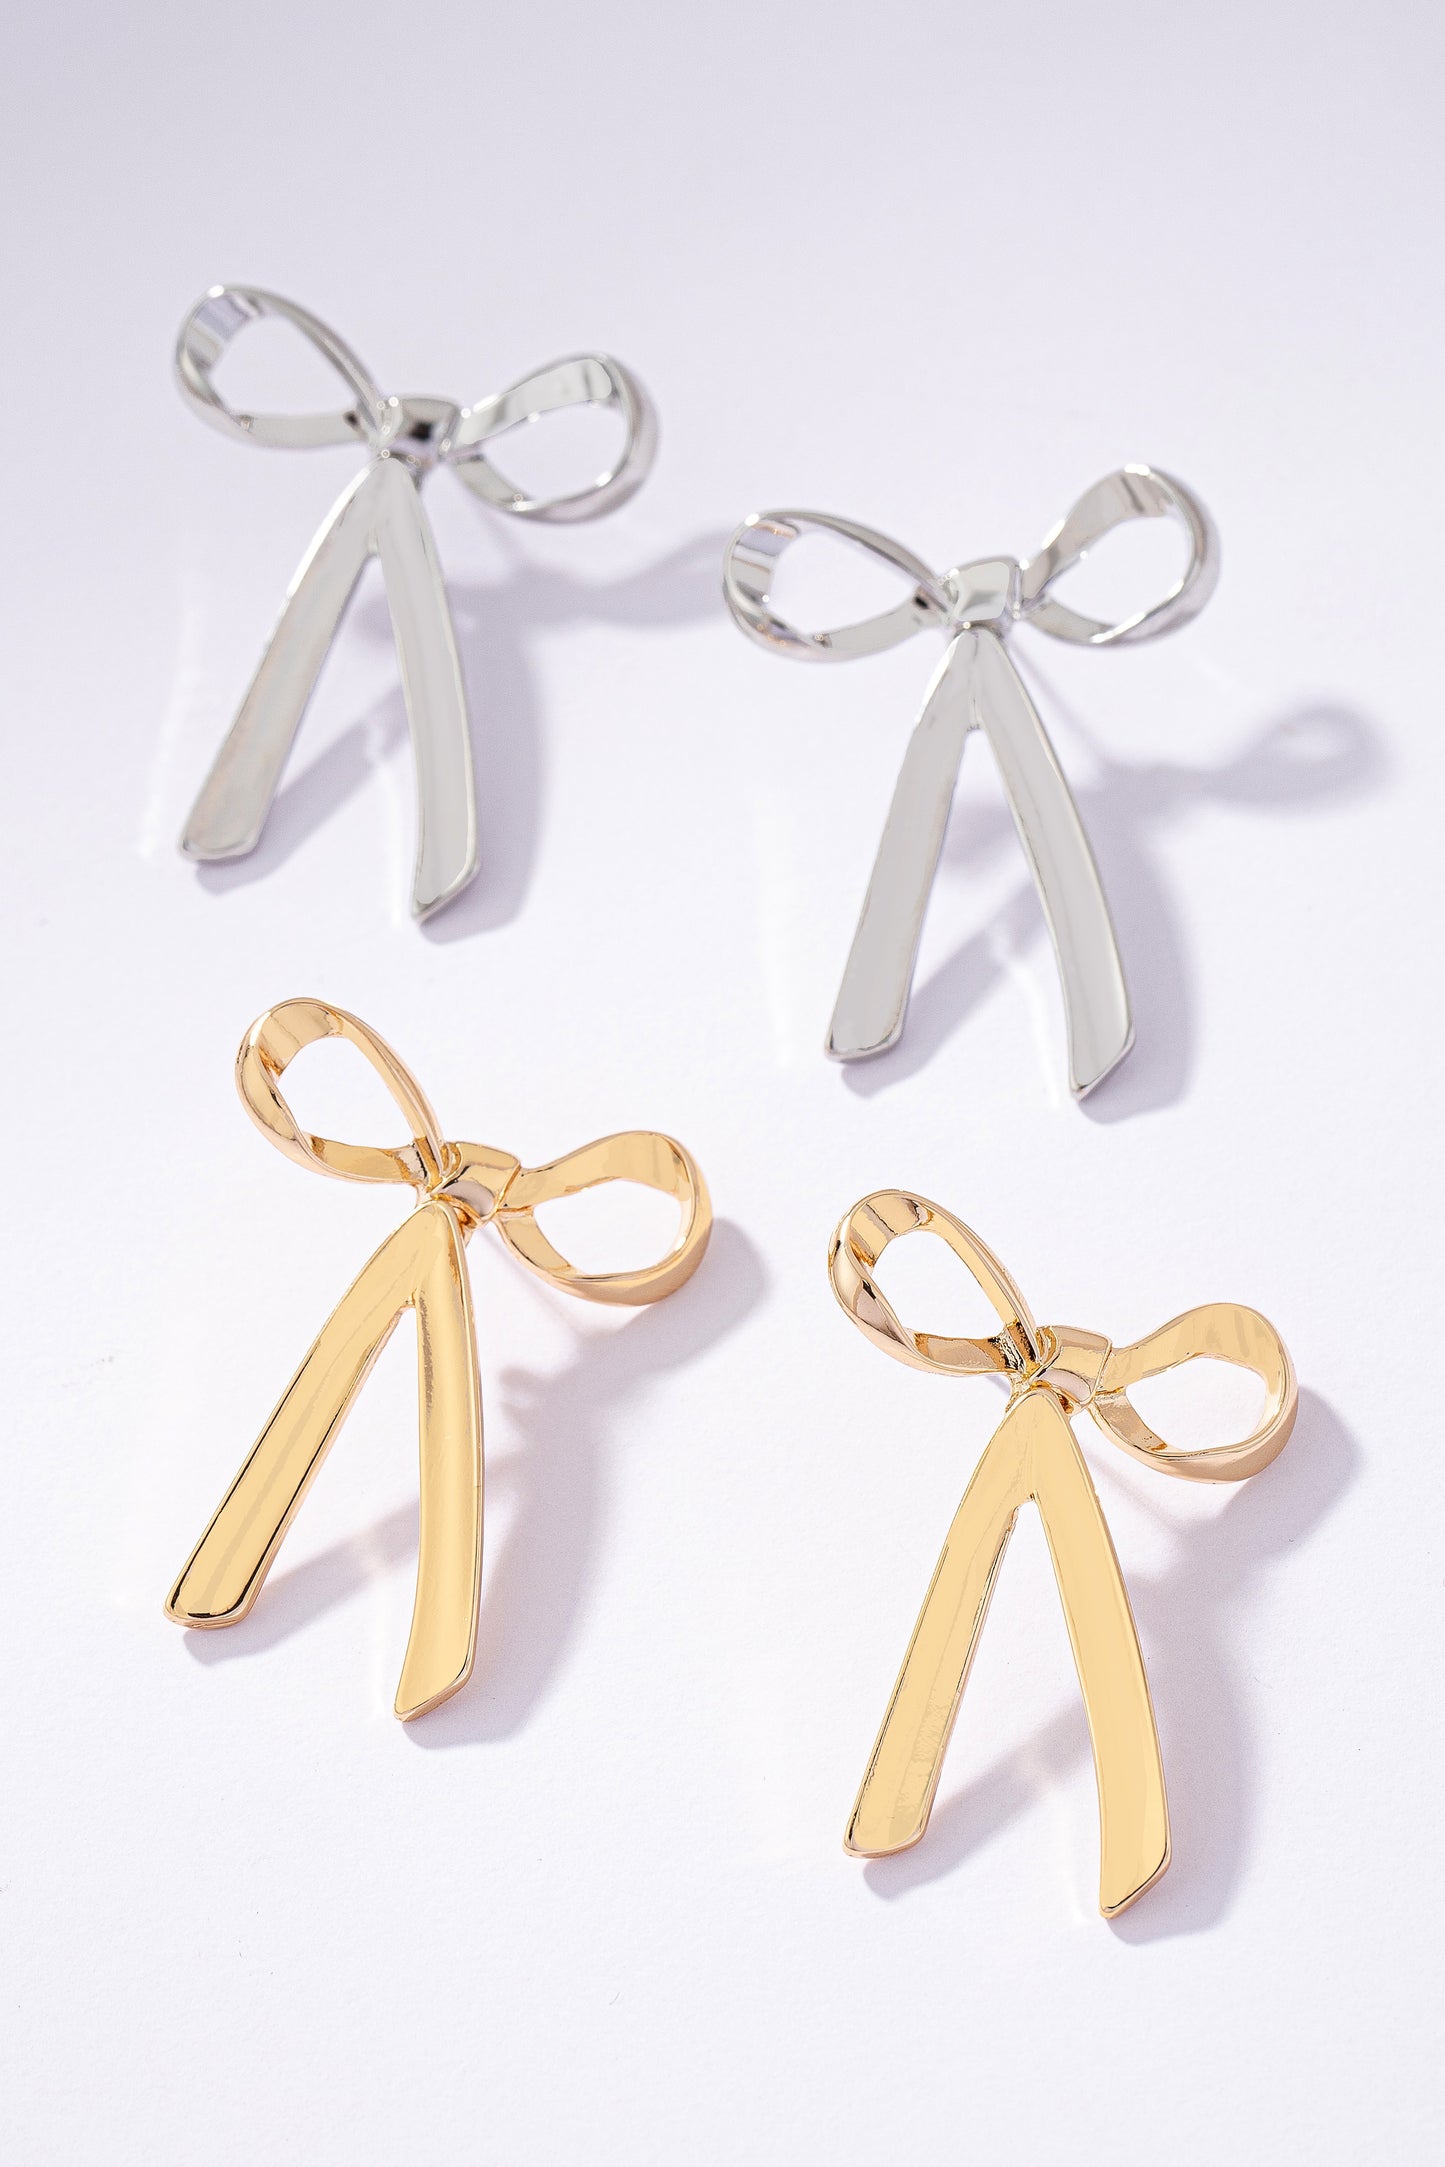 Gold/Silver Bow Tie Earrings